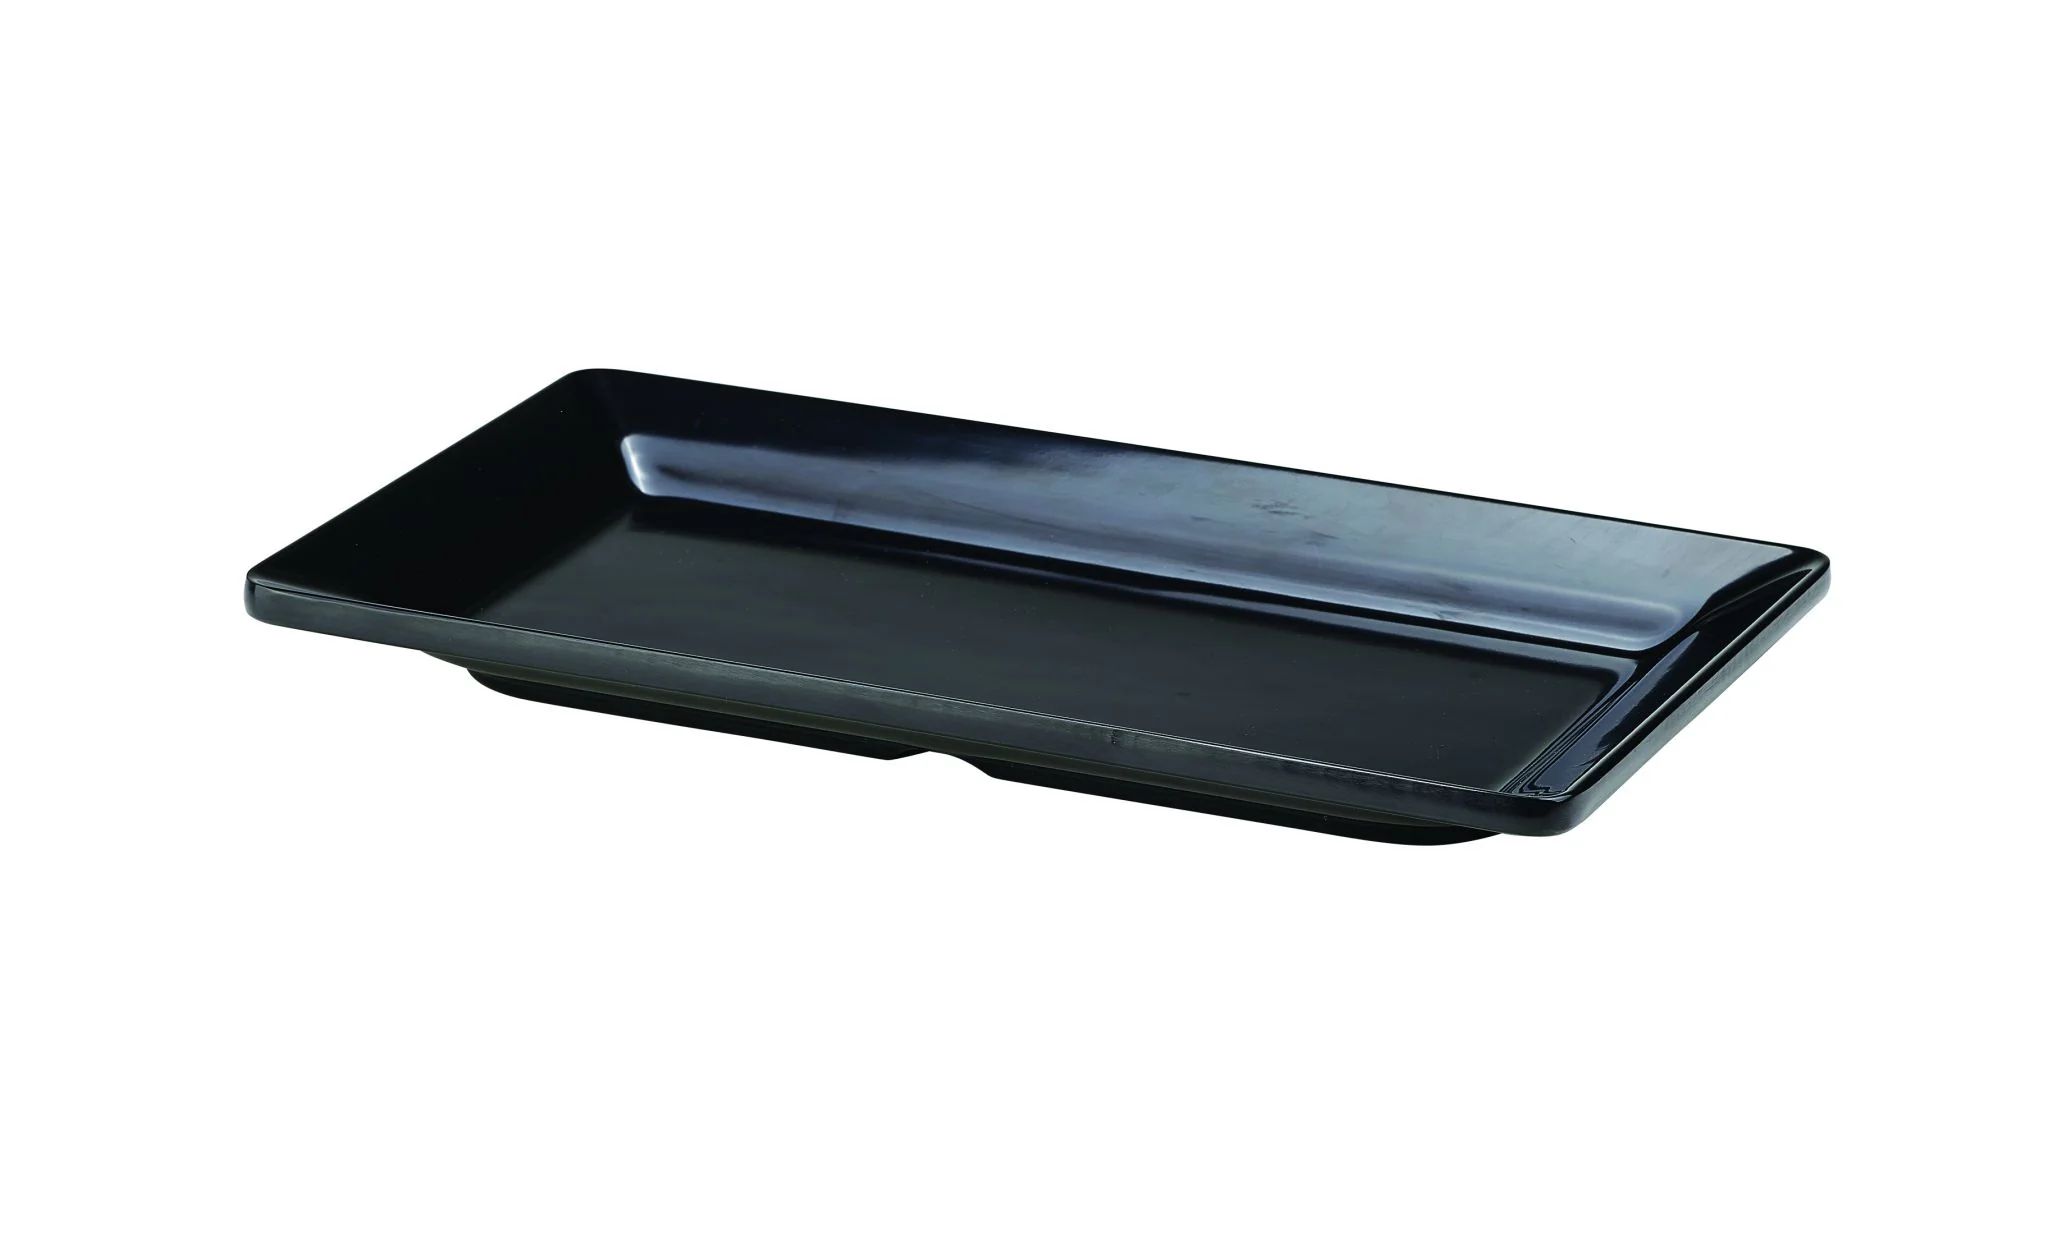 Black Melamine Platter GN 1/3 Size 32X17.5cm